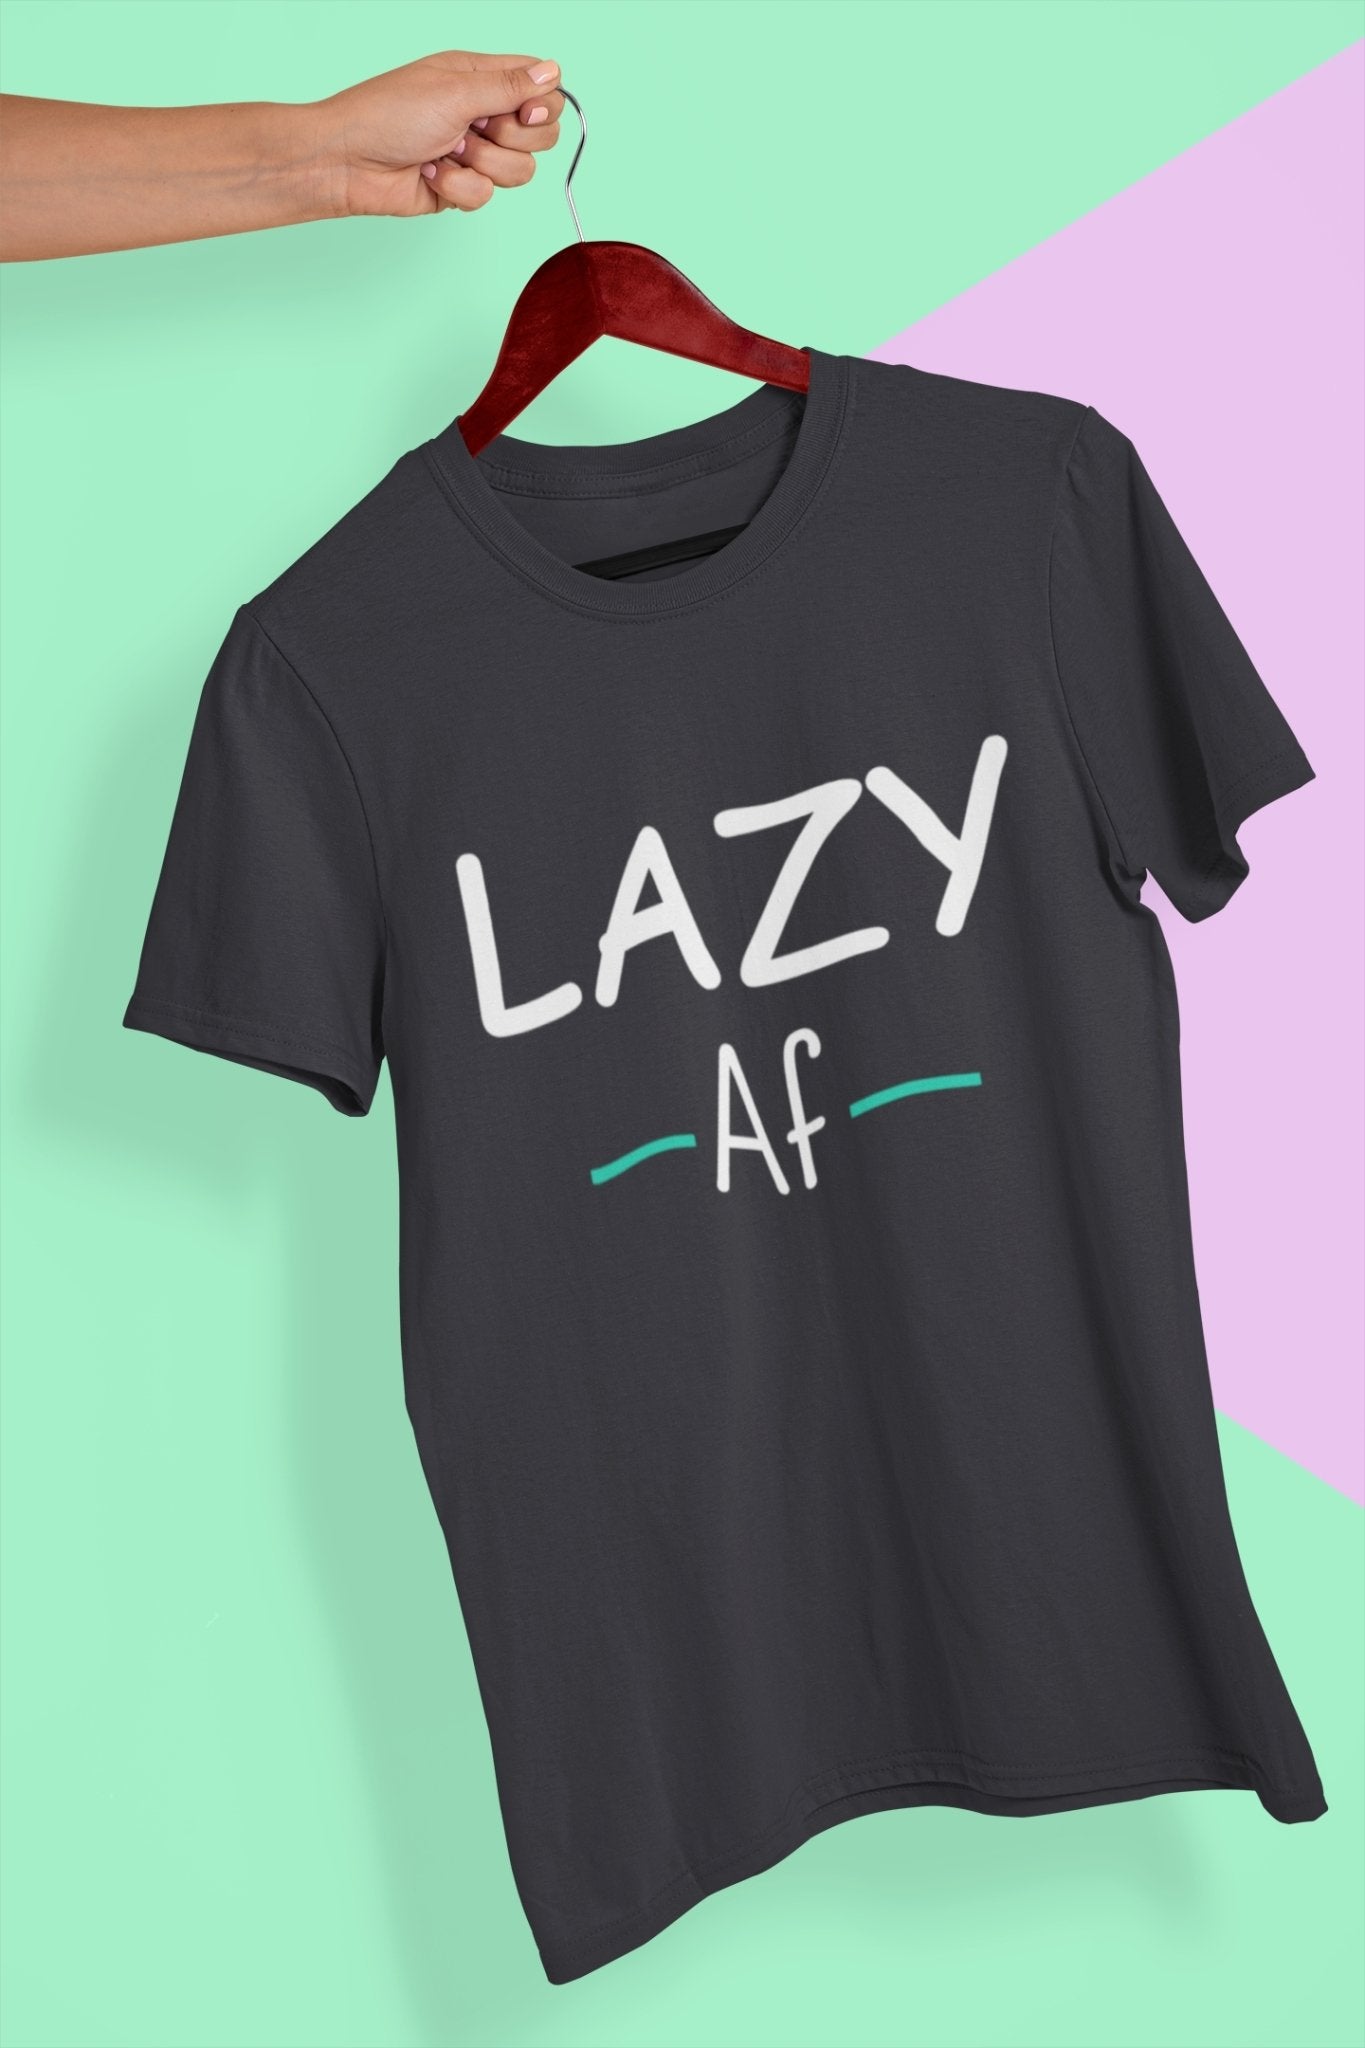 Lazy Af Typography Mens Half Sleeves T-shirt- FunkyTeesClub - Funky Tees Club